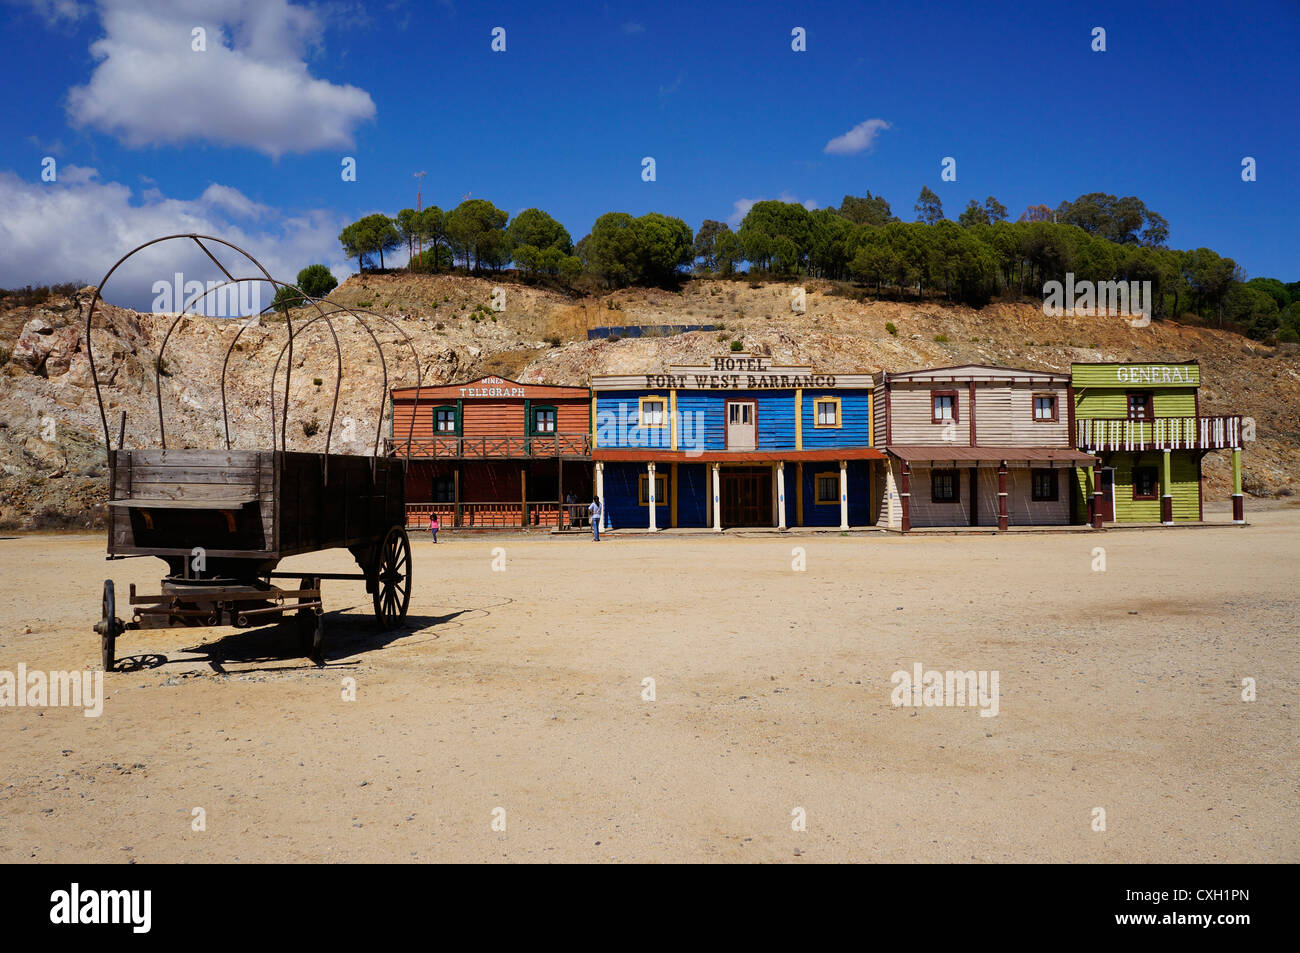 En vue de face d'un vieux fort ouest hotel Barranco, et séparés avec transport, roue de chariot, Séville, Espagne Banque D'Images